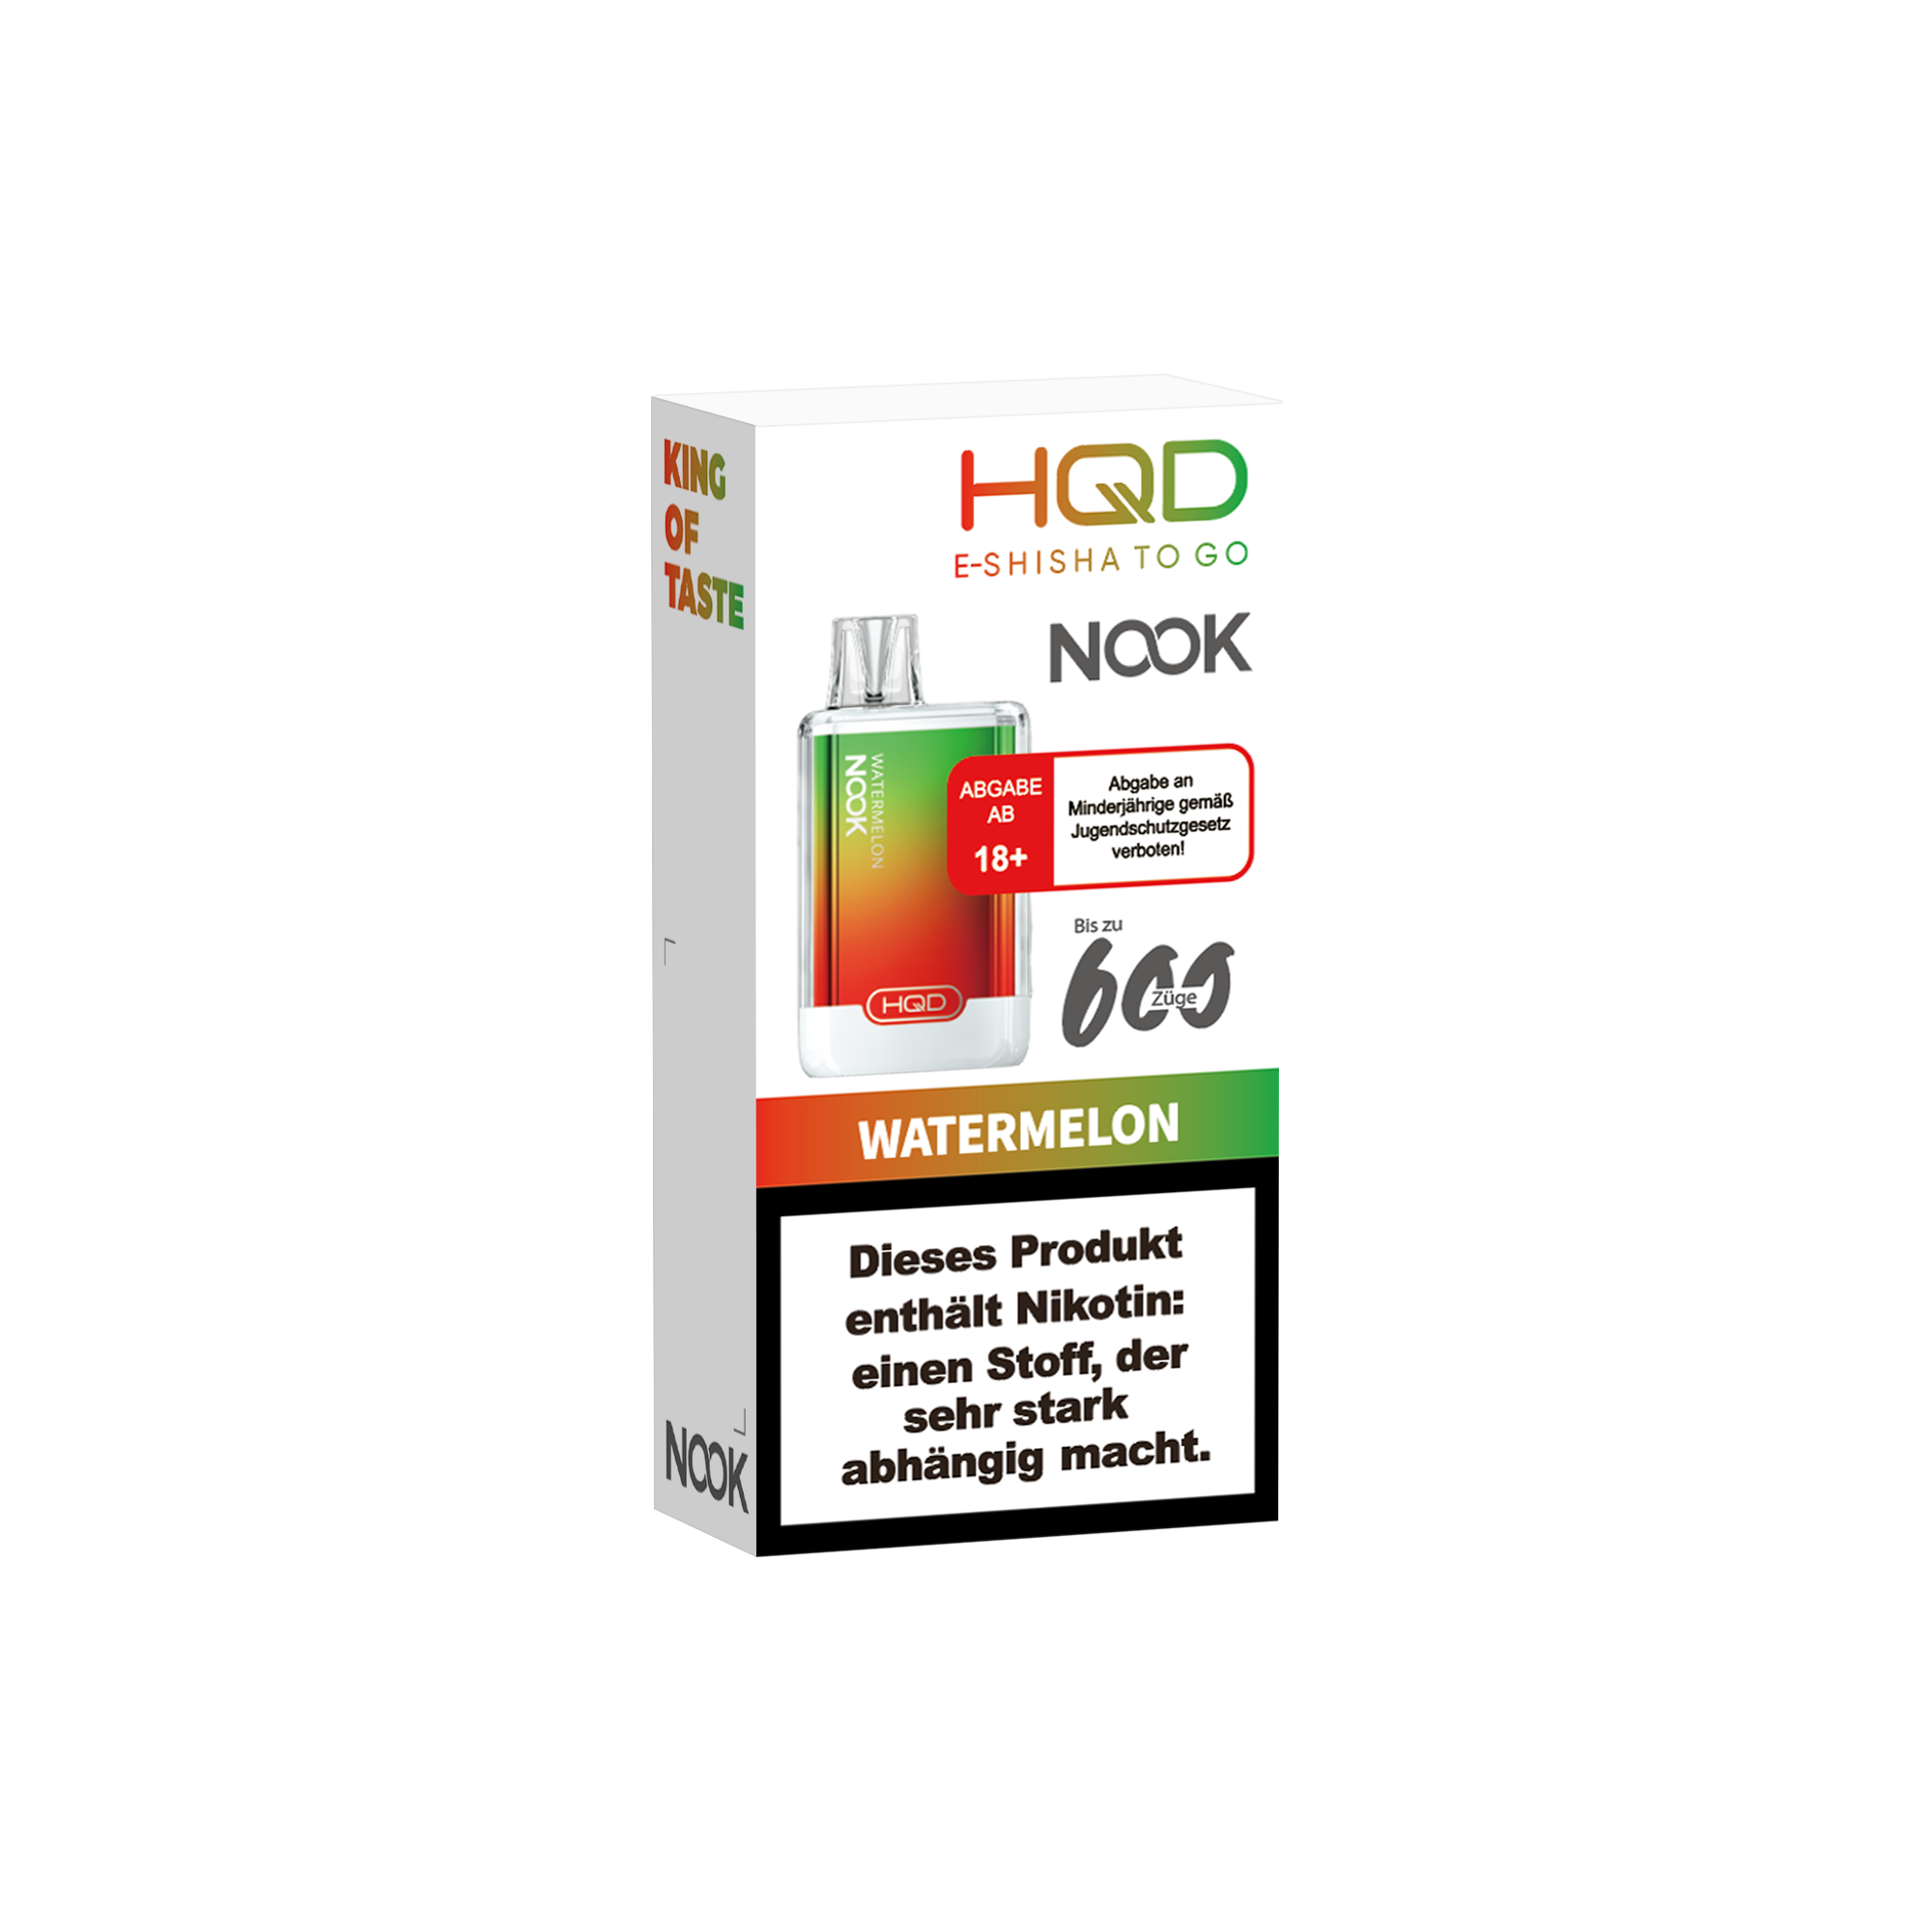 E-Zigarette HQD Nook WATERMELON 18mg Nikotin 600